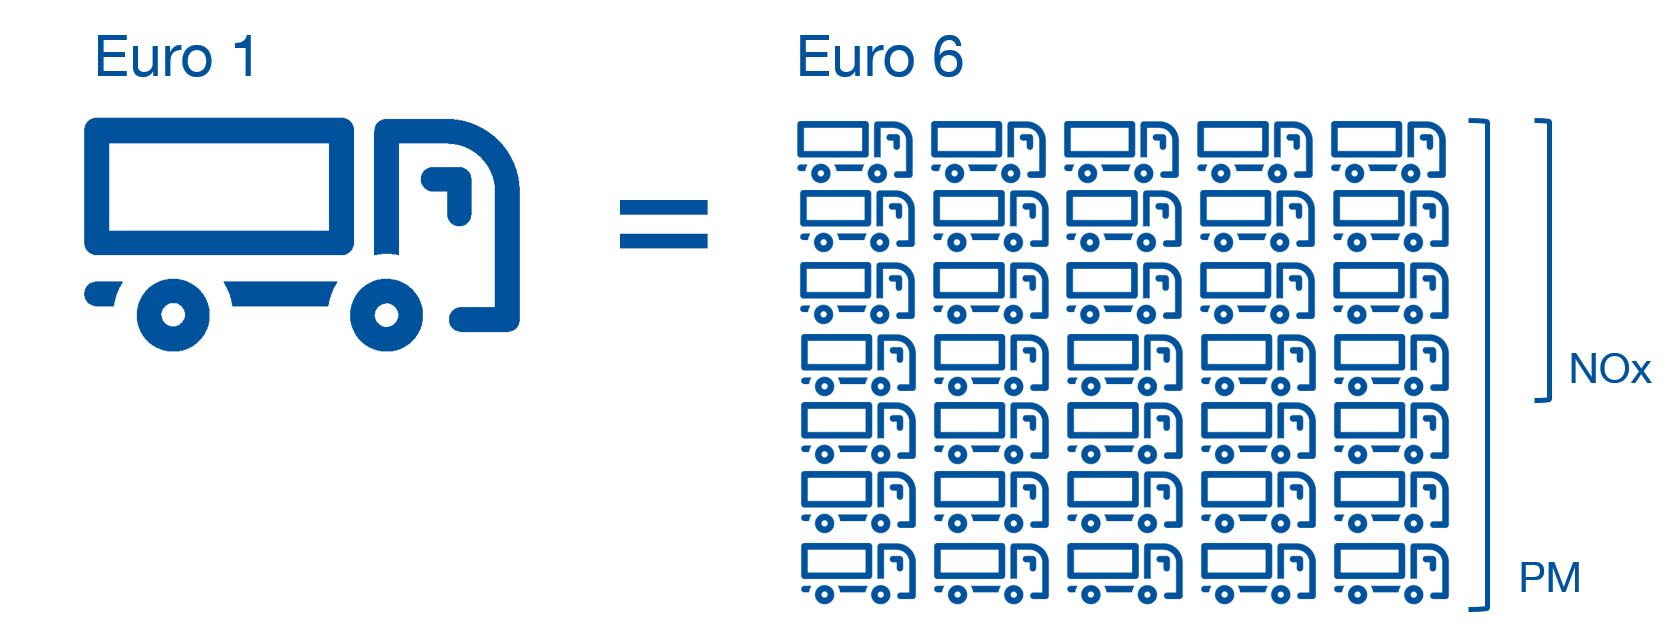 Euro 1 6 compared